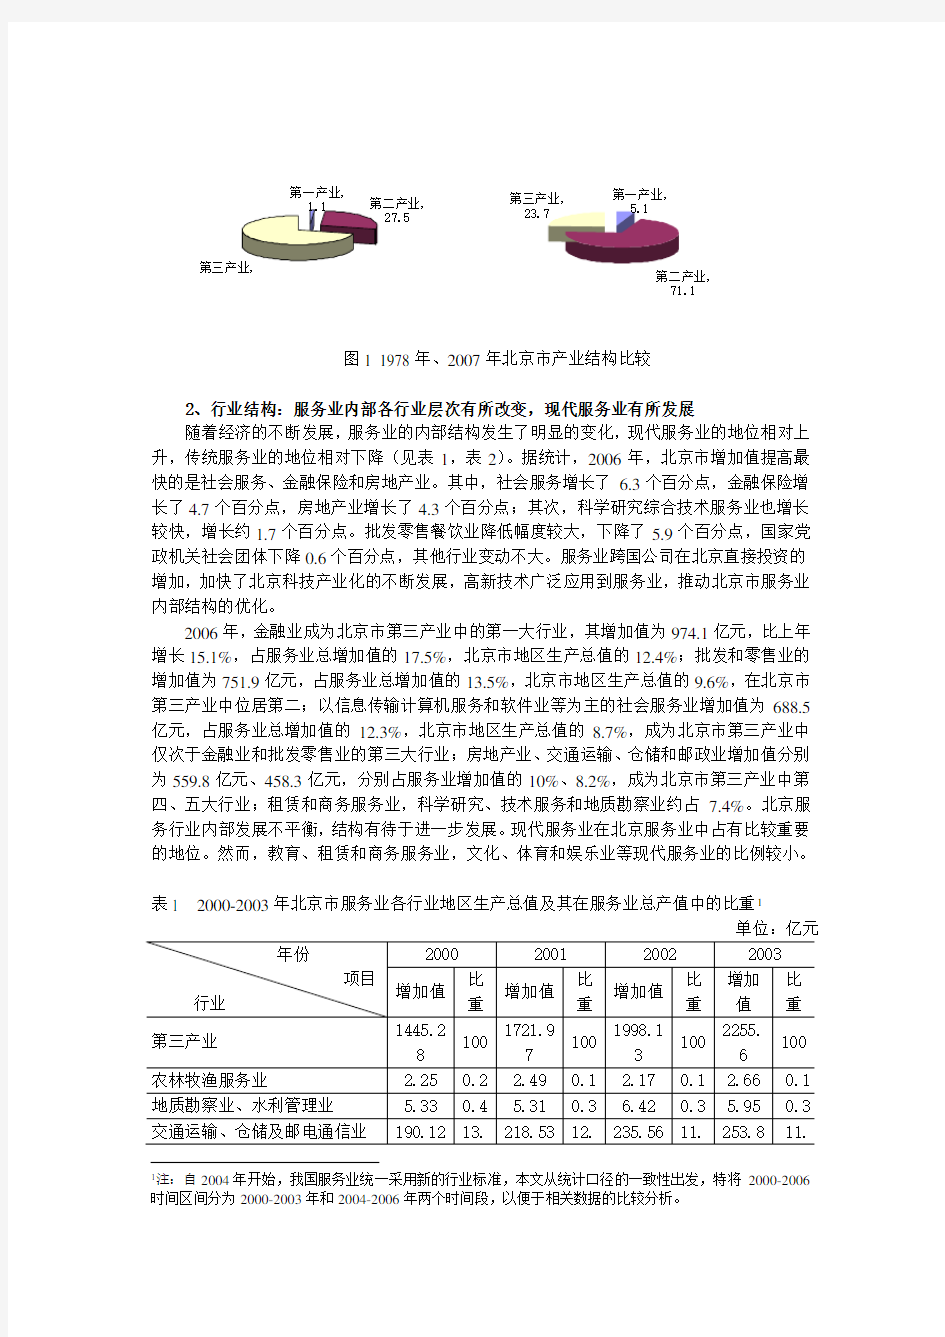 北京市服务业发展现状与对策研究